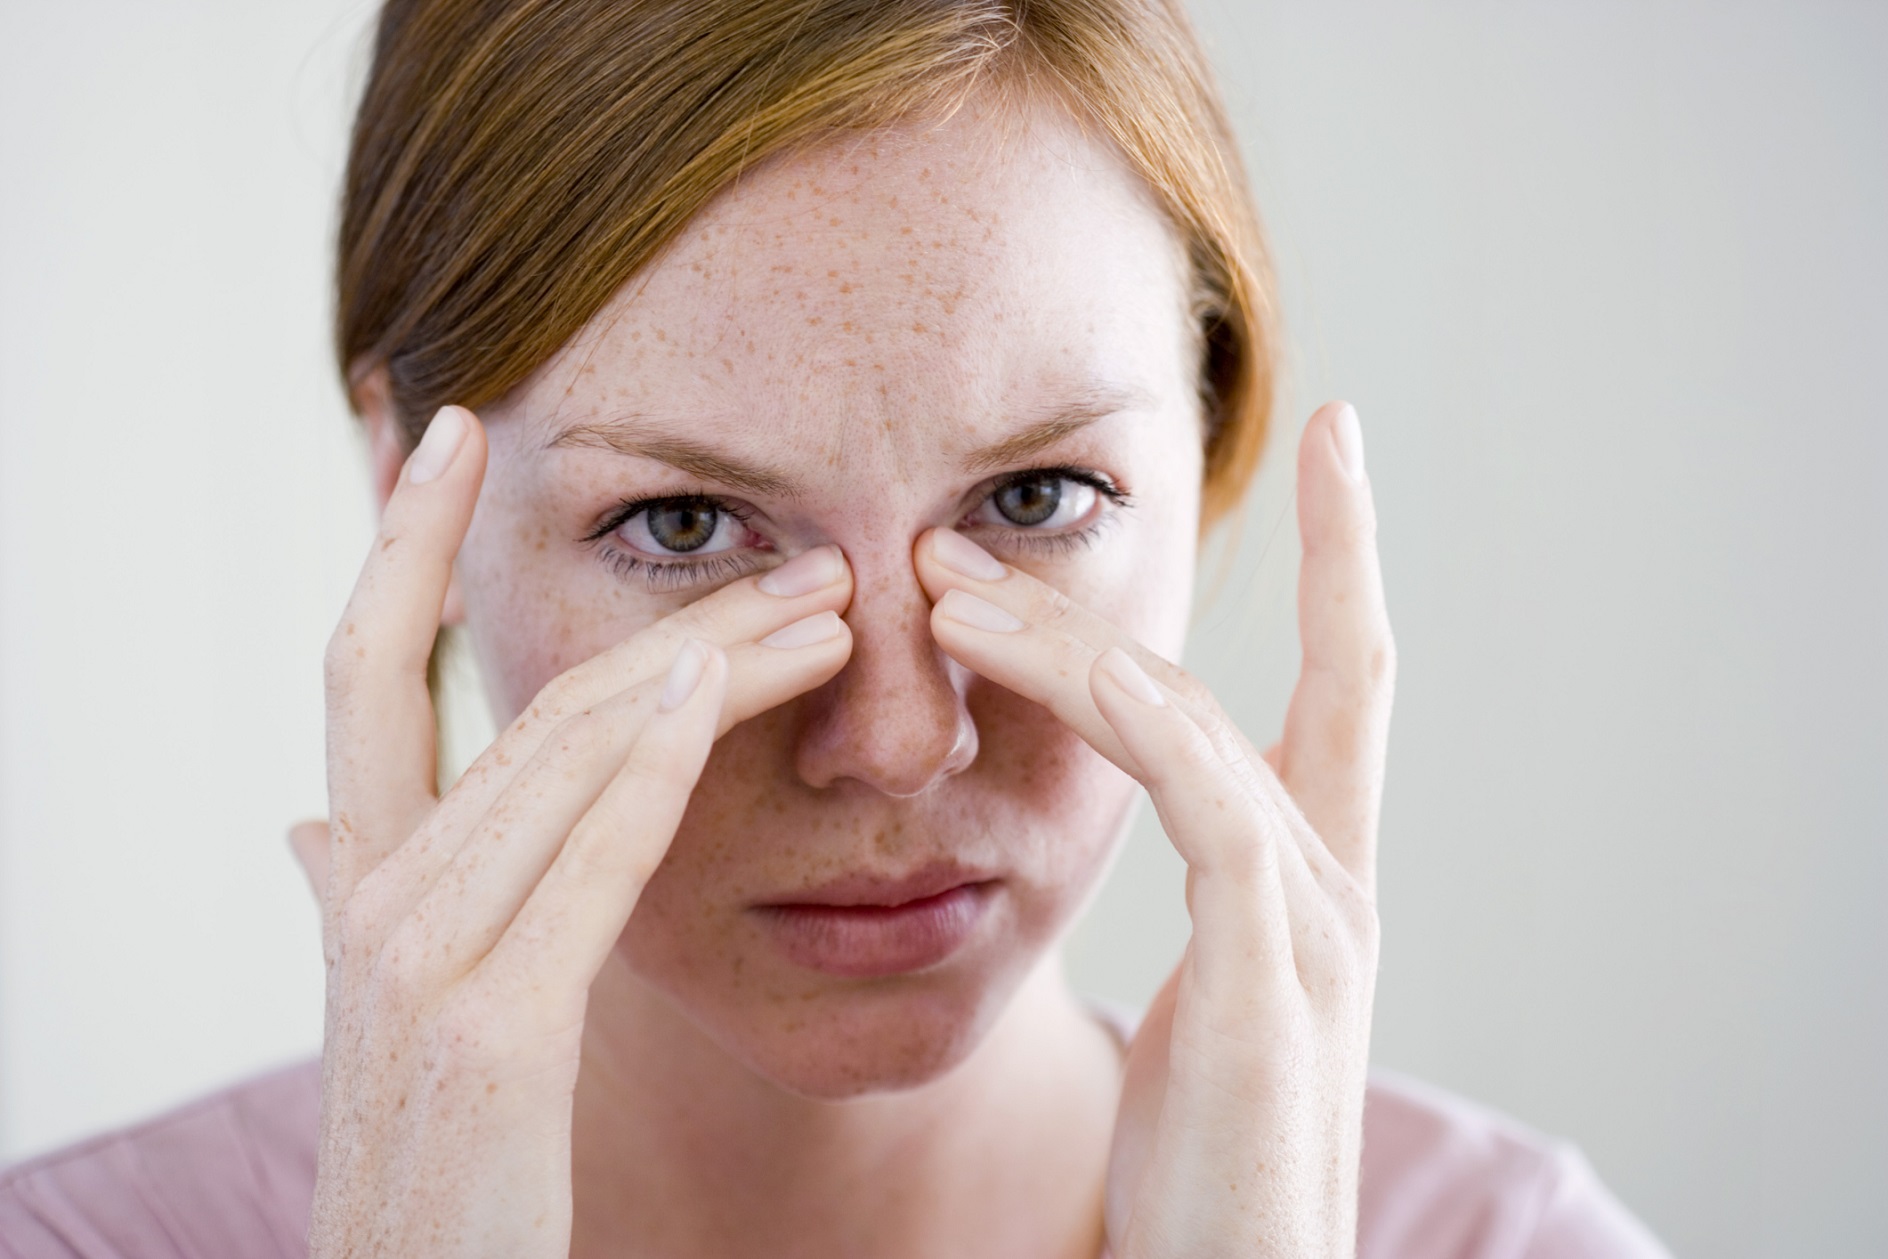 Punti neri sul viso: come eliminarli con i rimedi naturali